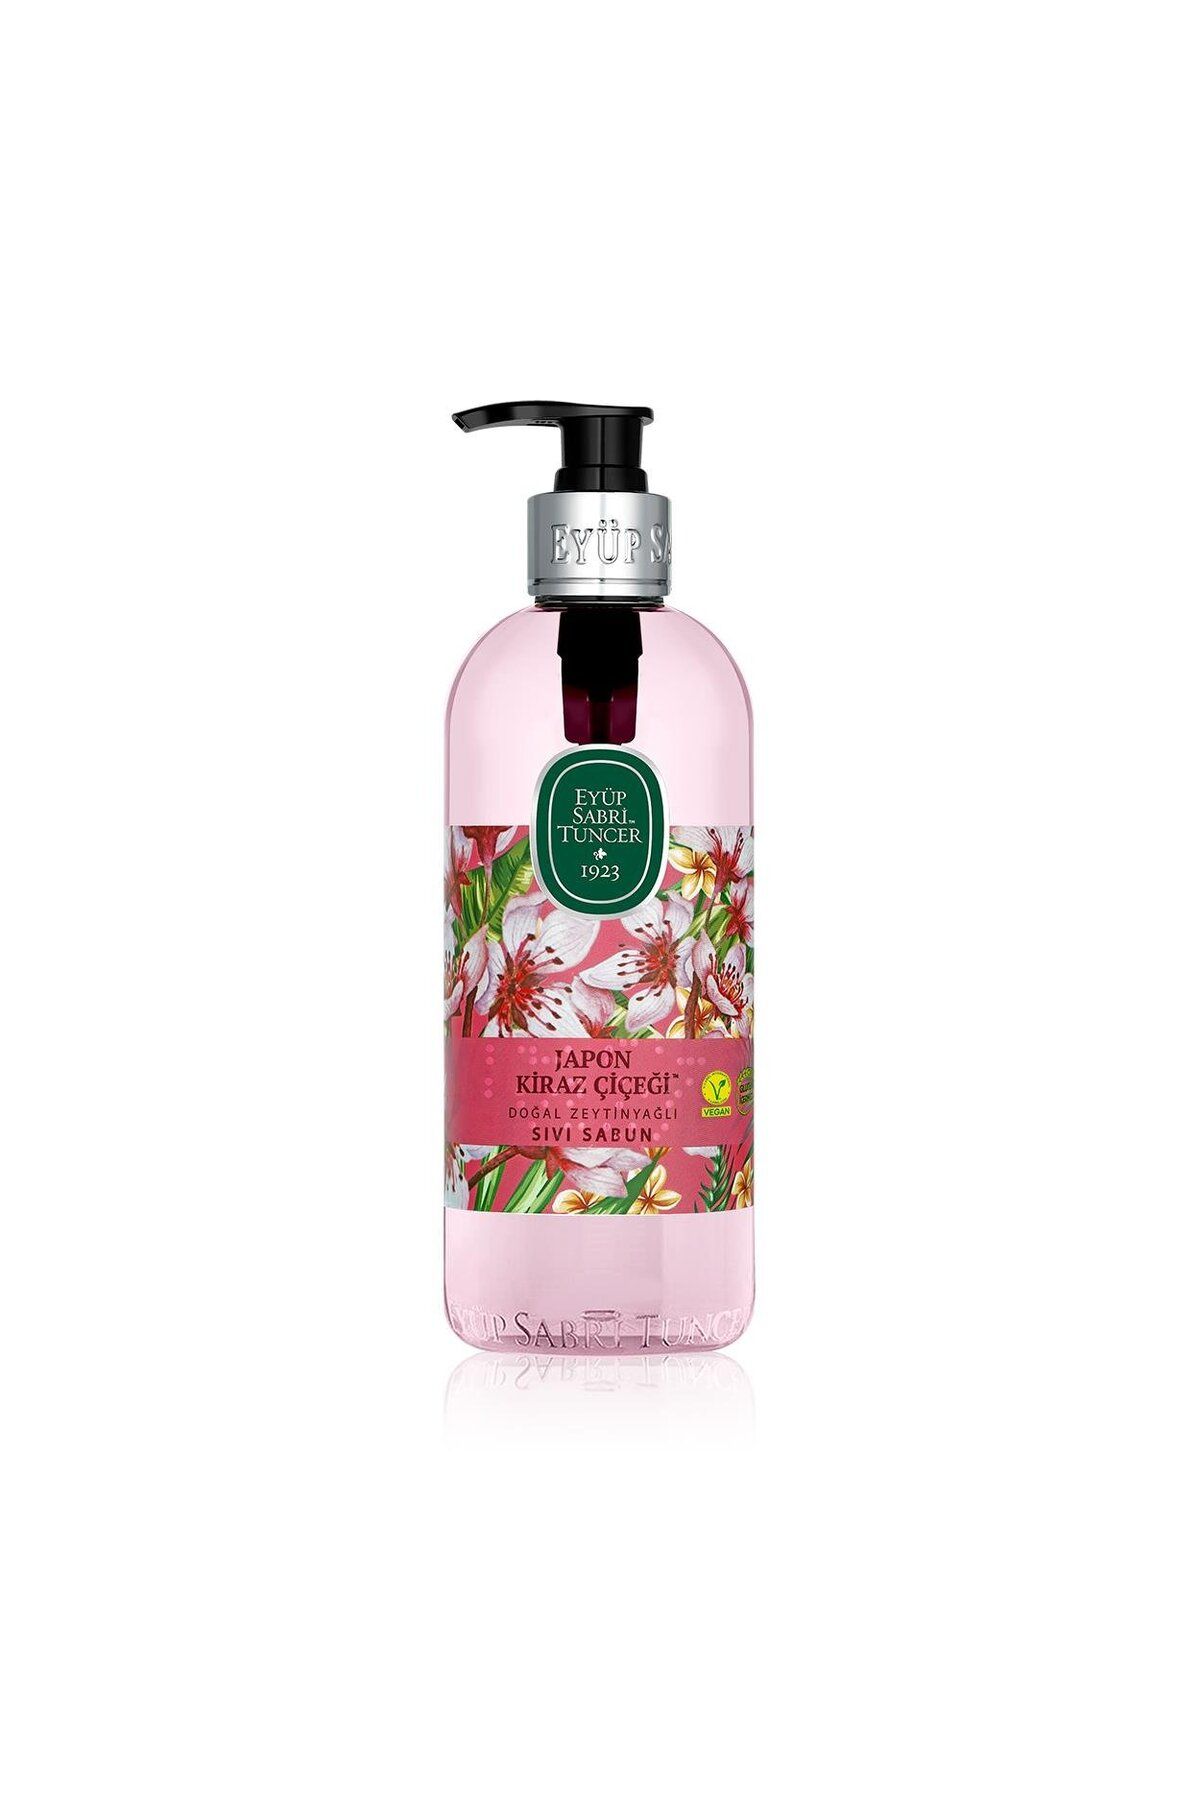 Eyüp Sabri Tuncer Japon Kiraz Çiçeği Doğal Zeytinyağlı Sıvı Sabun 500 ml